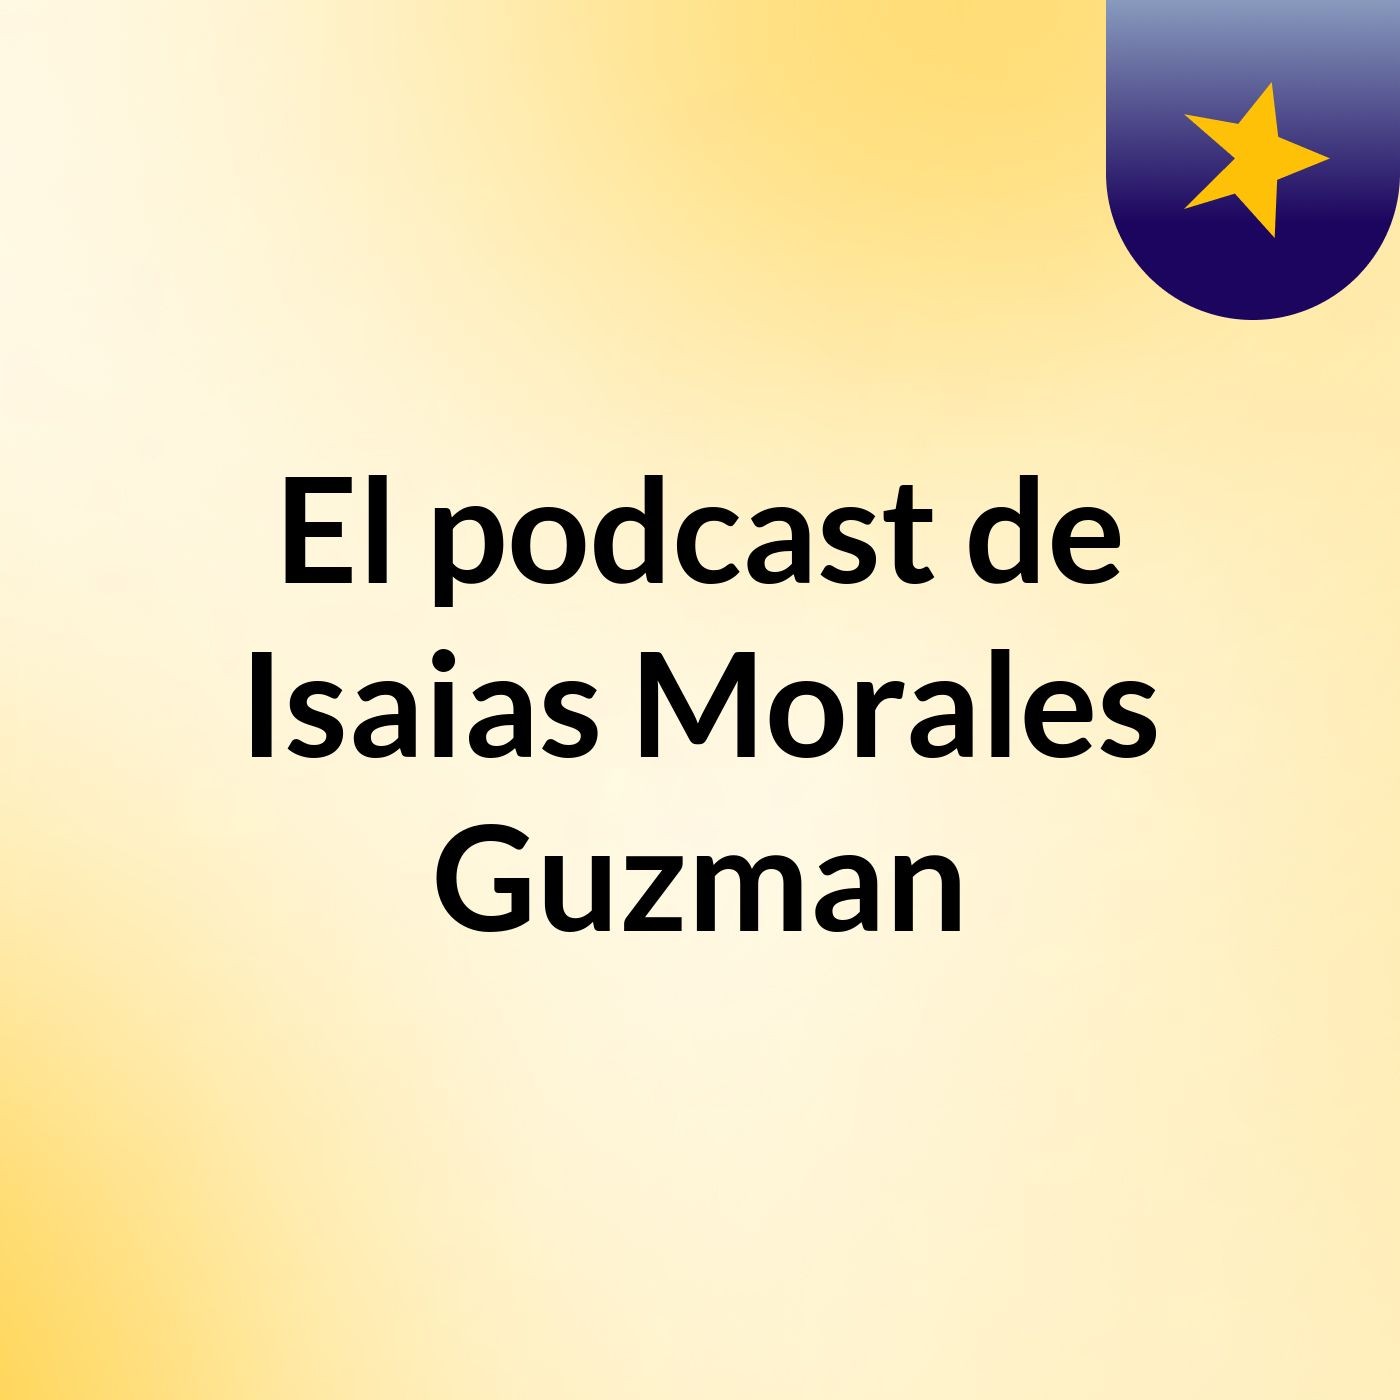 Episodio 3 - El podcast de Isaias Morales Guzman